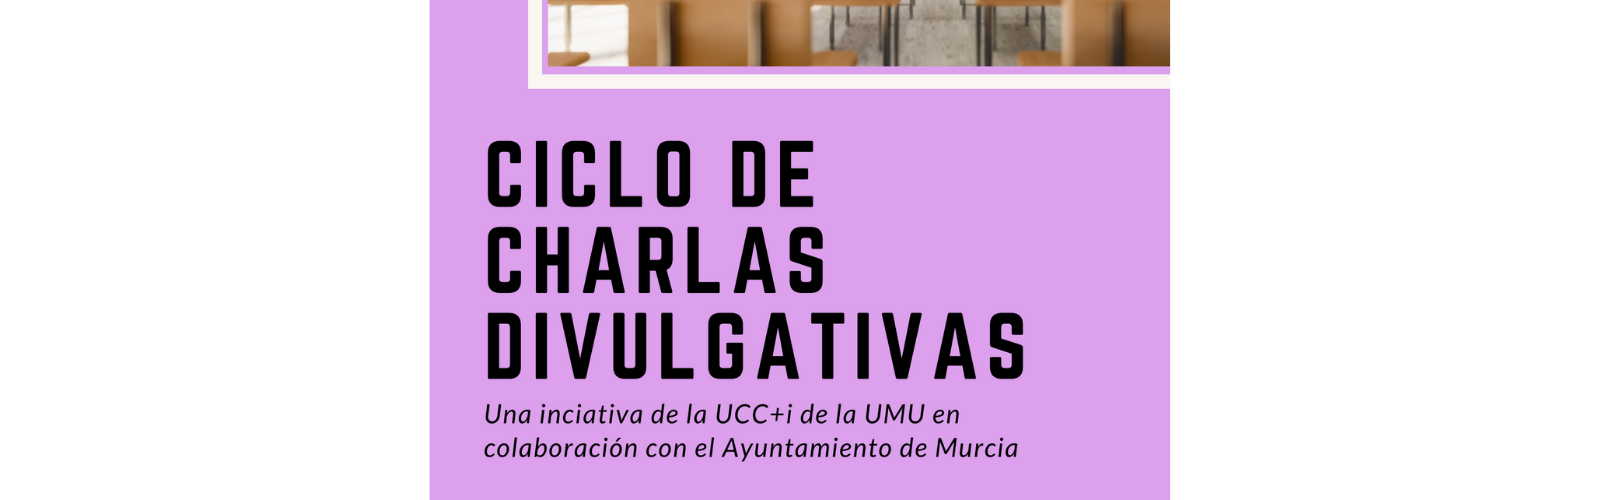 Vuelven las charlas divulgativas de la UMU y el Ayuntamiento de Murcia para llevar la ciencia a los institutos